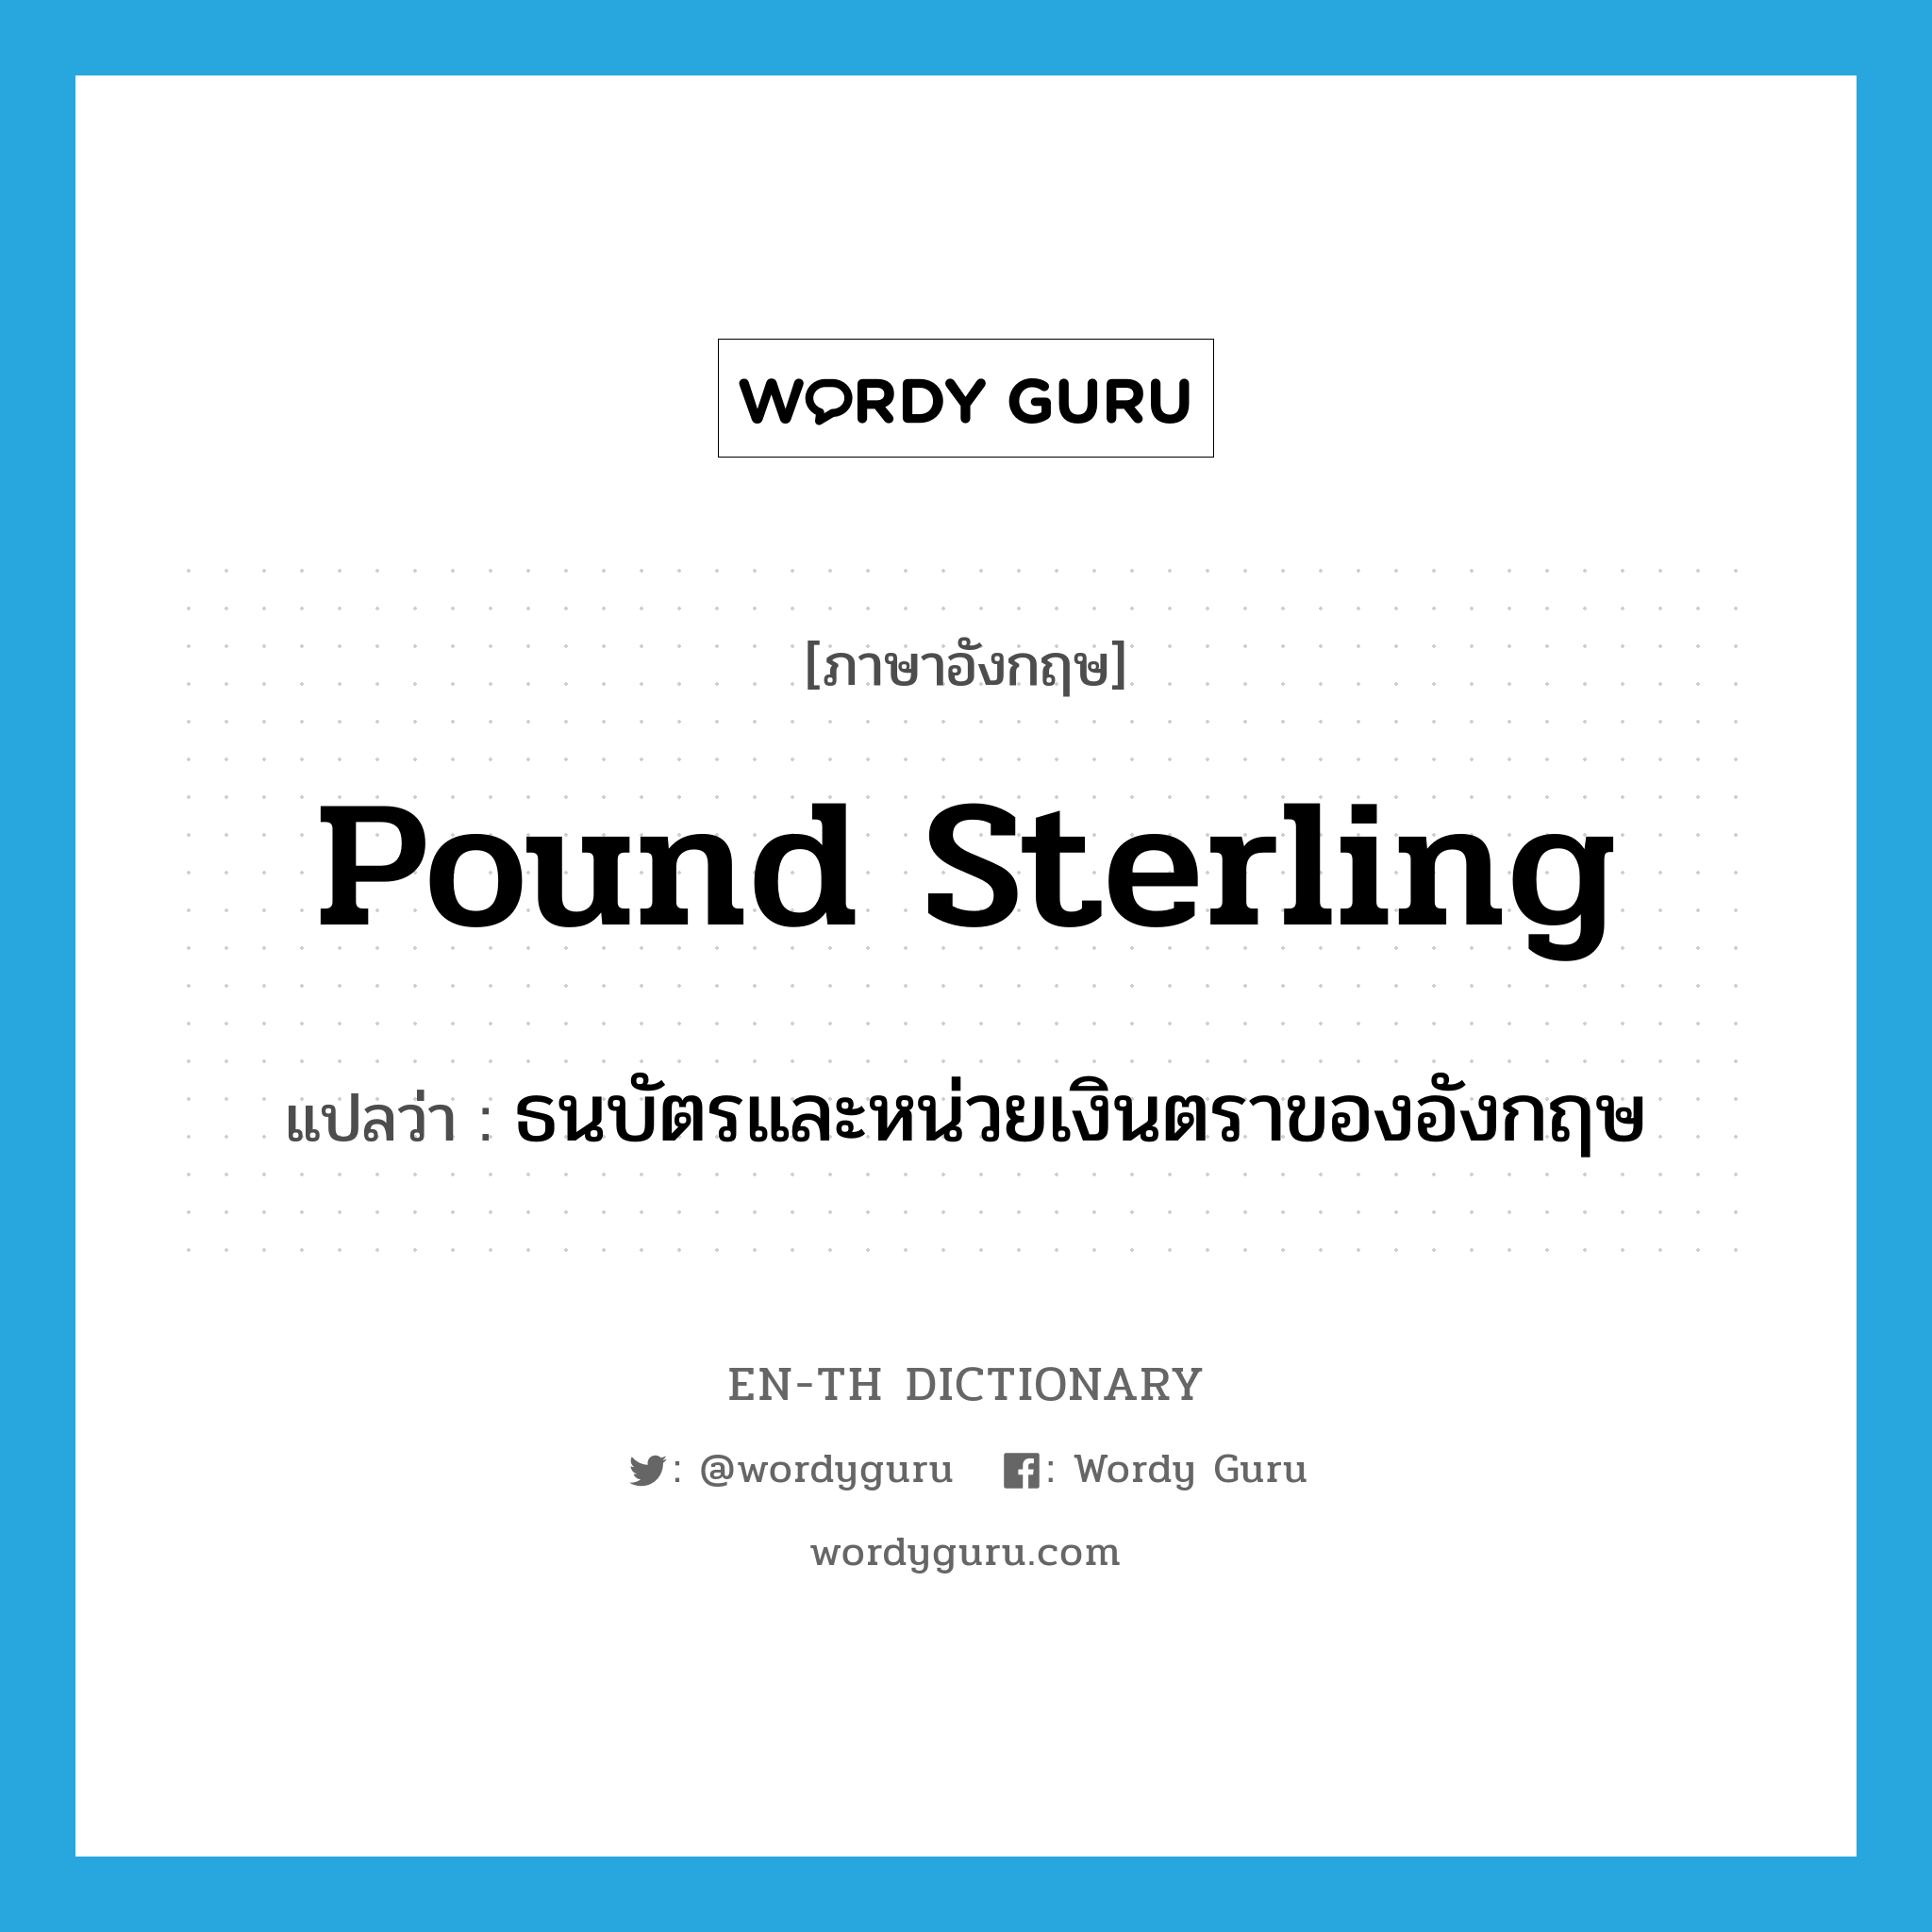 pound sterling แปลว่า?, คำศัพท์ภาษาอังกฤษ pound sterling แปลว่า ธนบัตรและหน่วยเงินตราของอังกฤษ ประเภท N หมวด N